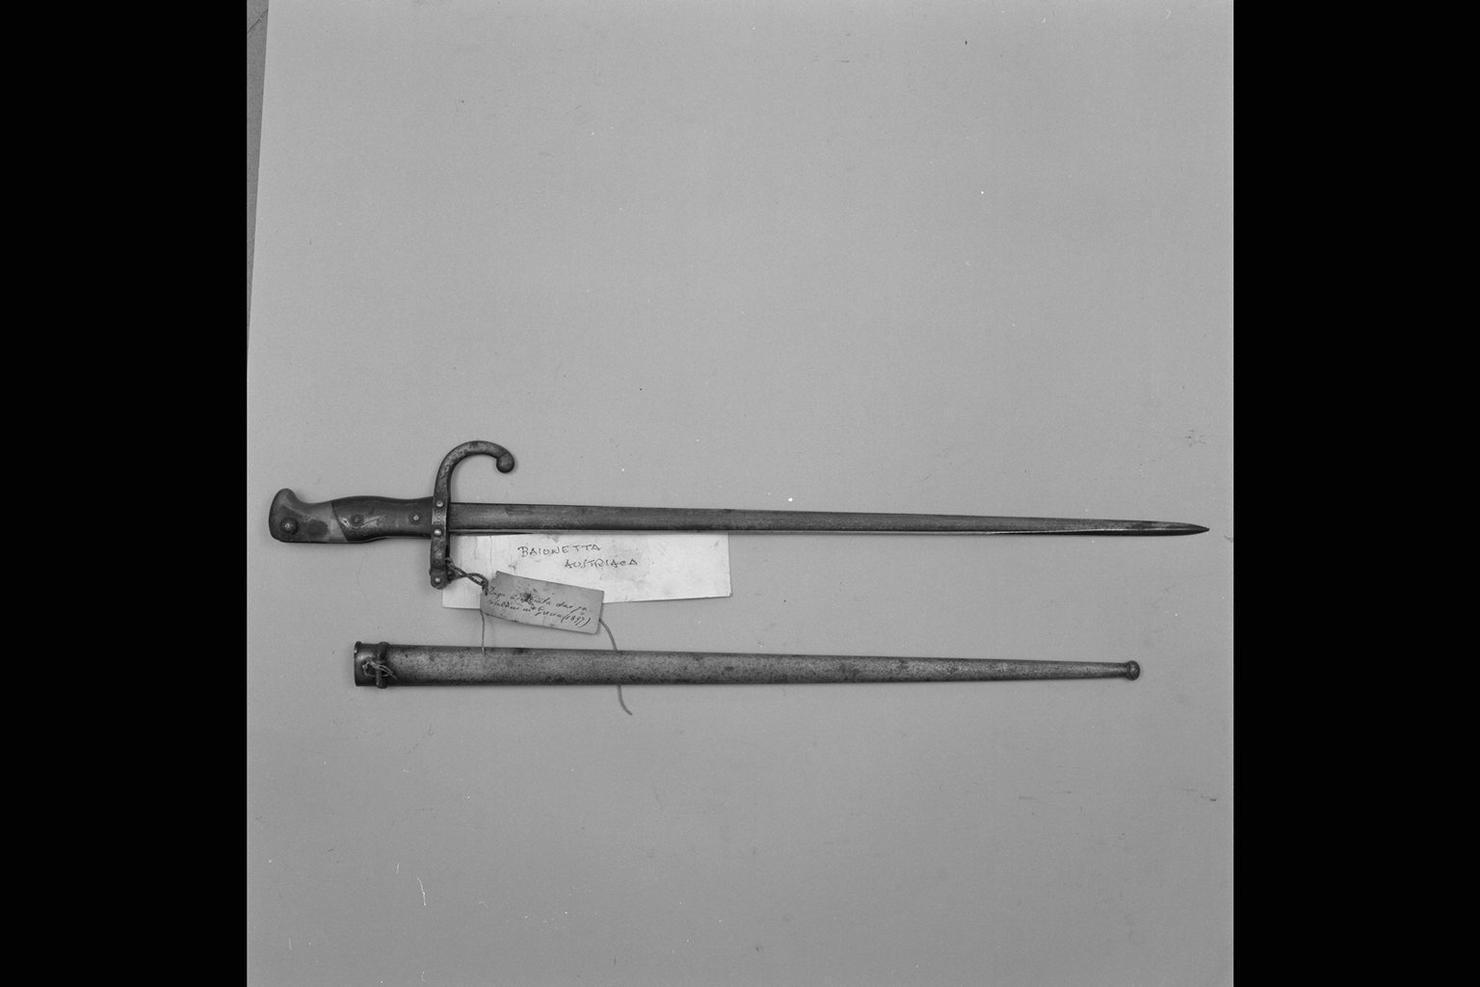 baionetta - manifattura austriaca, manifattura greca (sec. XIX)